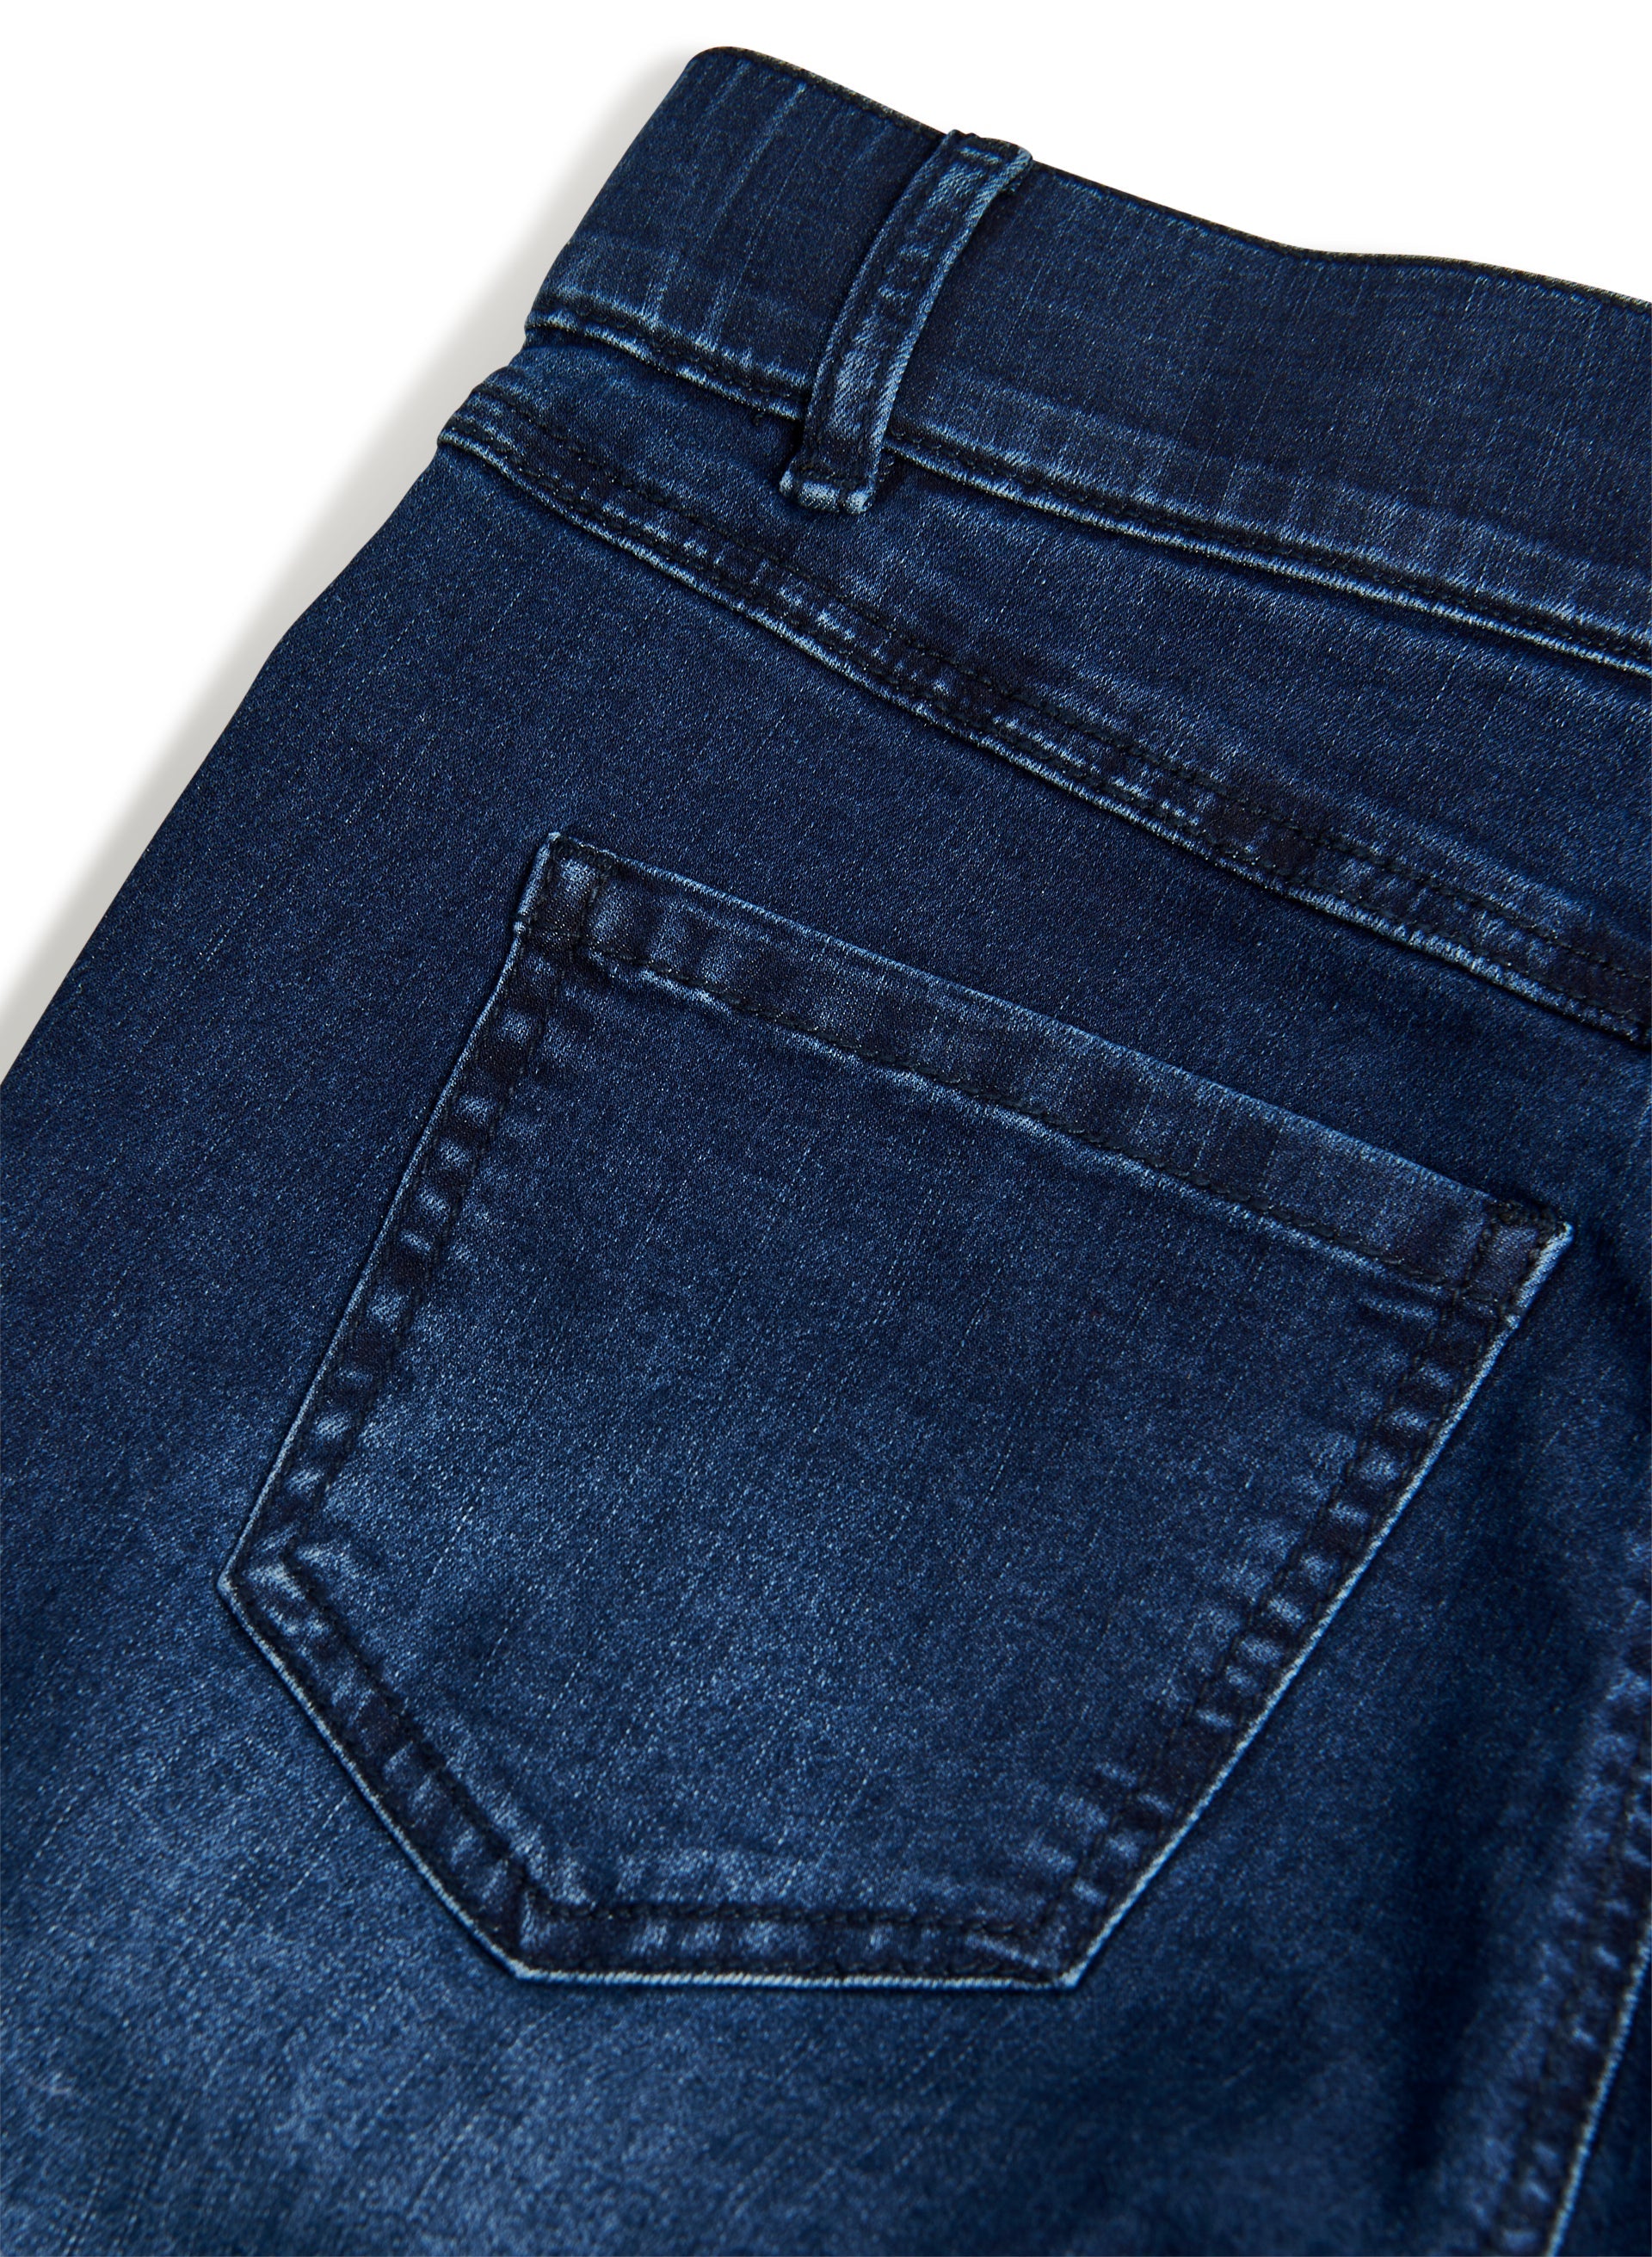 Women's Bootcut Jeans Low Cut Dark Blue Wash Five Pocket Style Belt Include  6-14